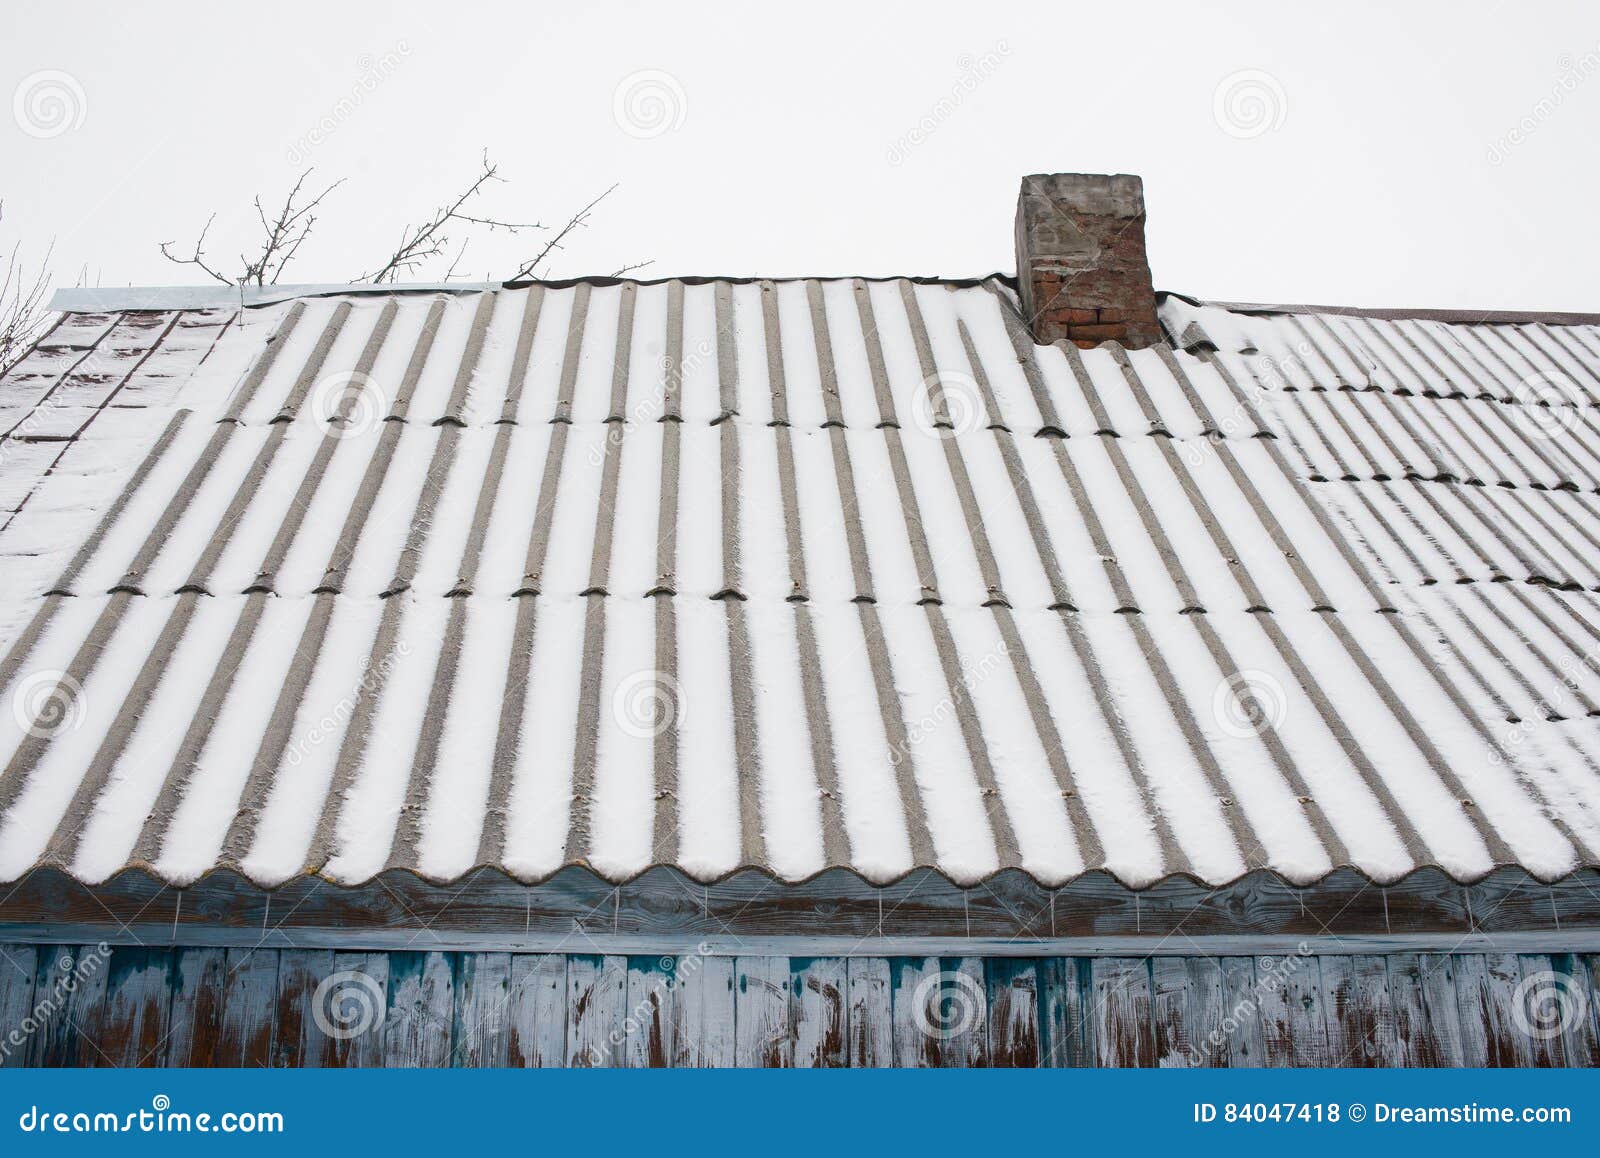 Выхино шиферная. Кровля из шифера. Старая шиферная крыша. Кровля из шифера под снегом. Крыша из шифера зима.